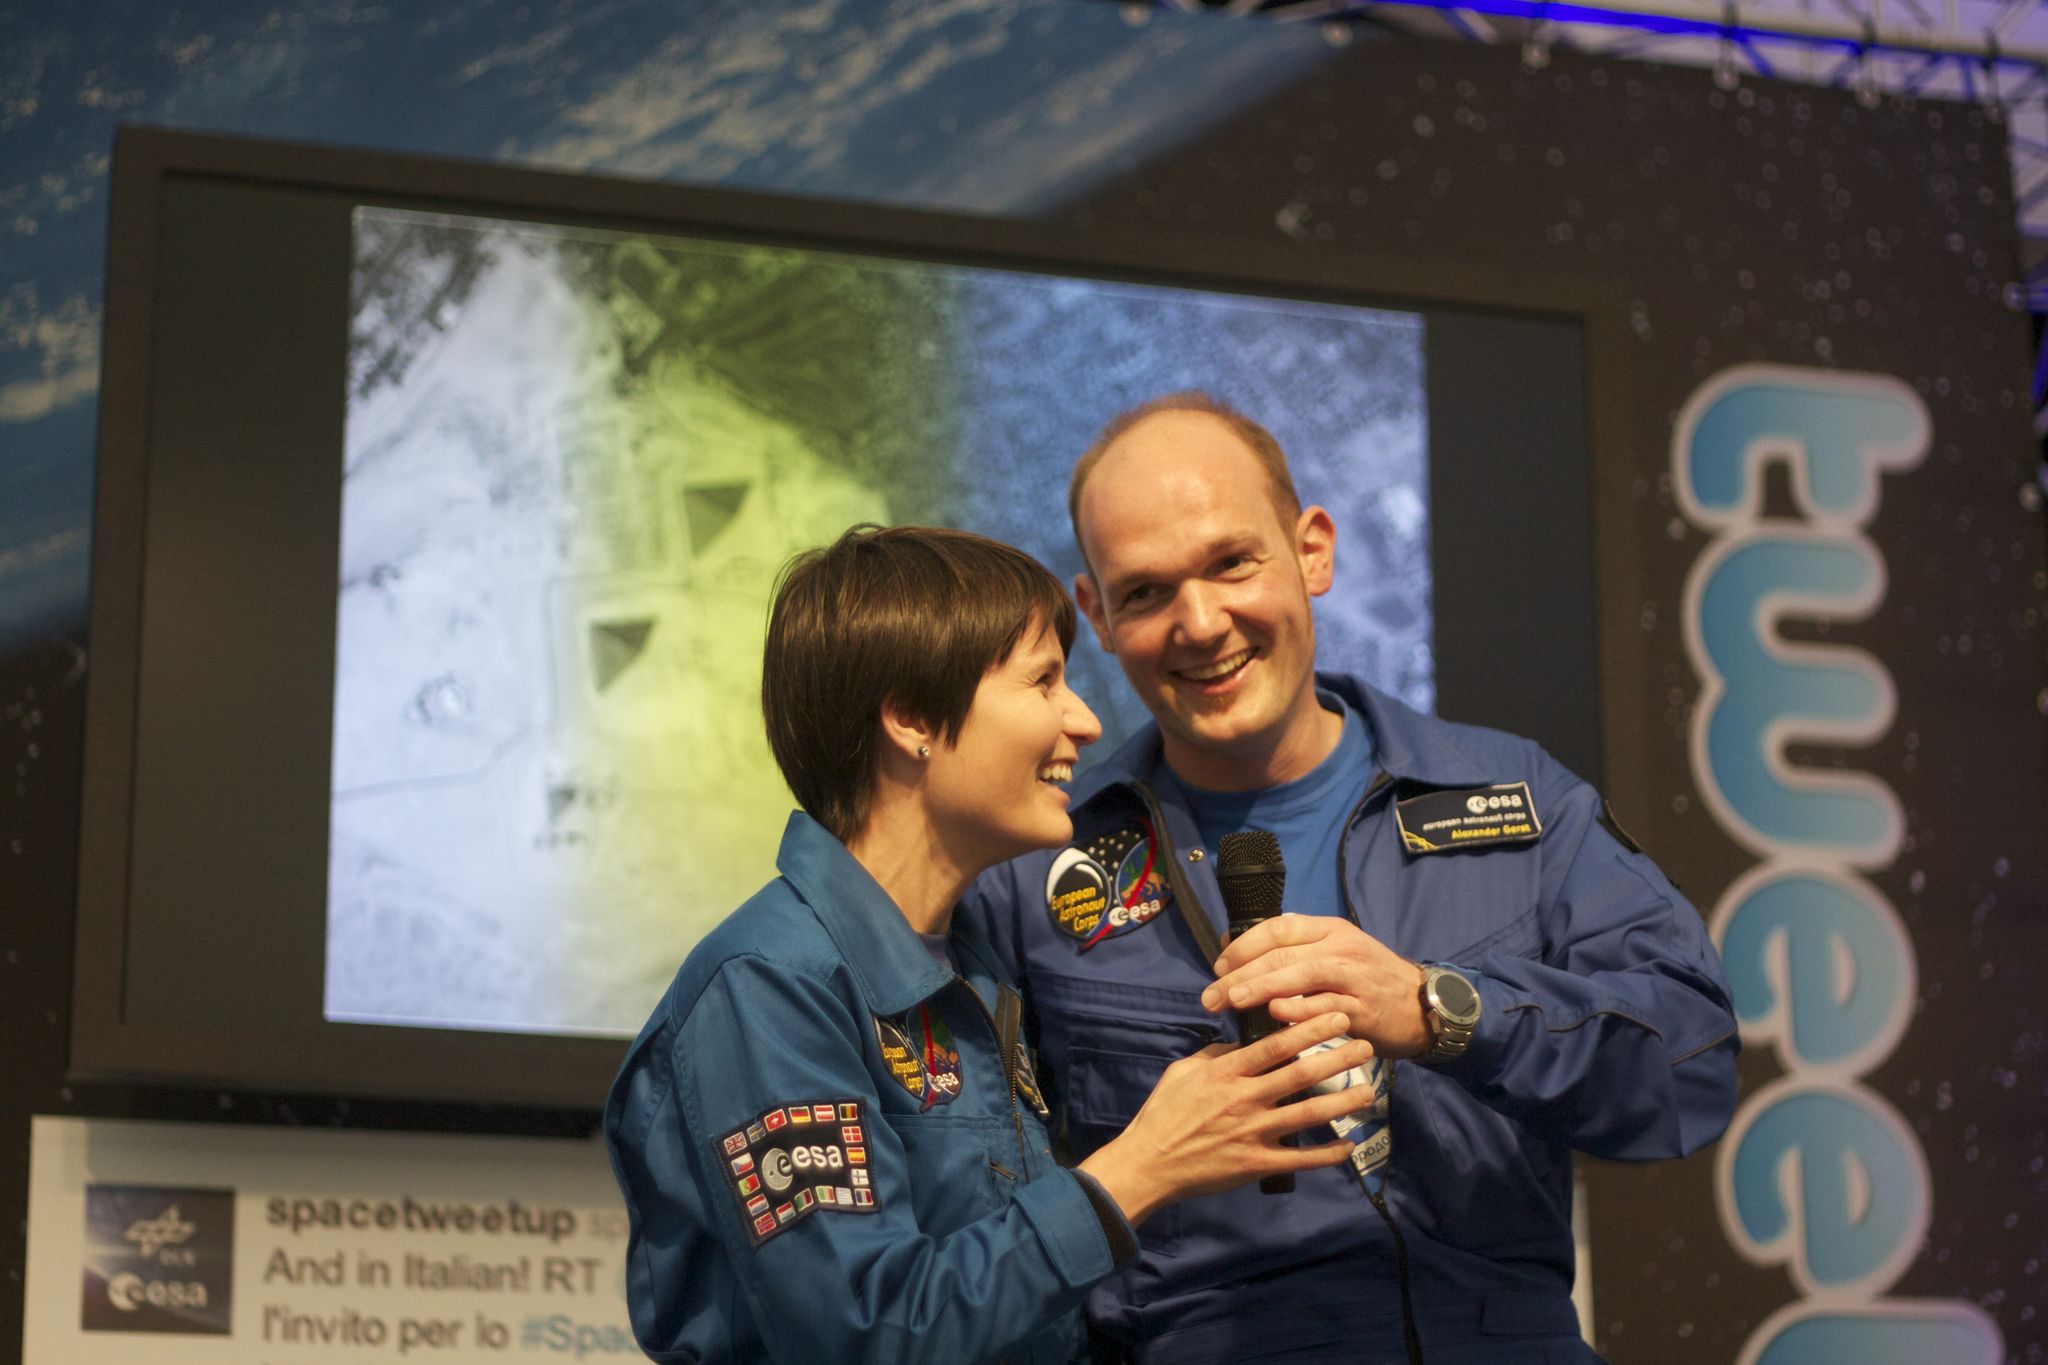 Samantha Cristoforetti et Alexander Gerst le 22 septembre 2011 lors du 1er SpaceTweetup organisé par l'ESA/DLR à Cologne, Allemagne (Crédits : nhaima sur flickr)